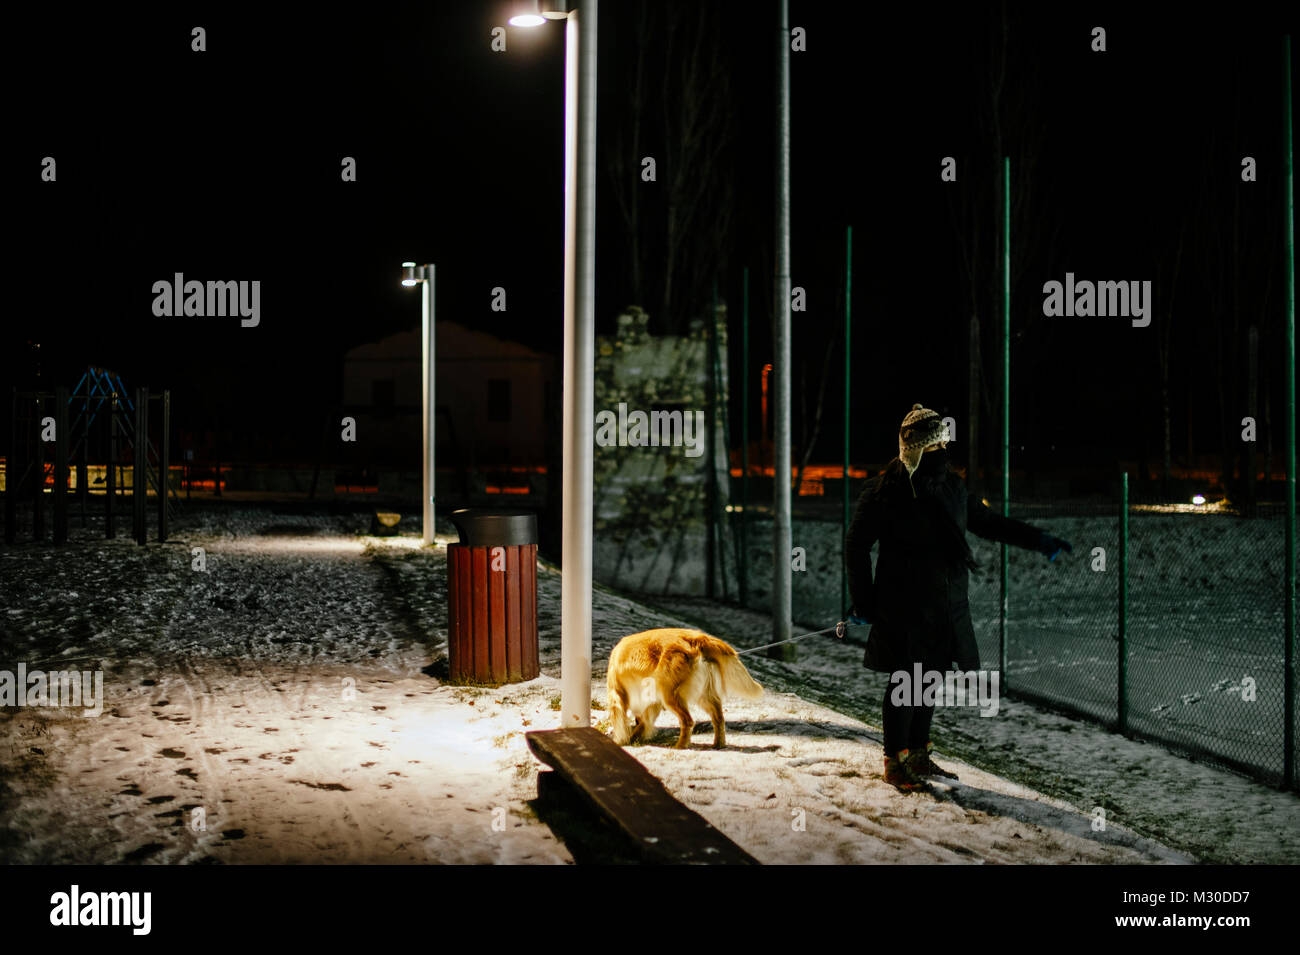 https://c8.alamy.com/compes/m30dd7/mujer-con-sombrero-camina-por-la-noche-con-el-perro-con-una-correa-iluminado-por-la-luz-de-una-lampara-de-la-calle-sobre-la-avenida-cubiertos-de-nieve-m30dd7.jpg